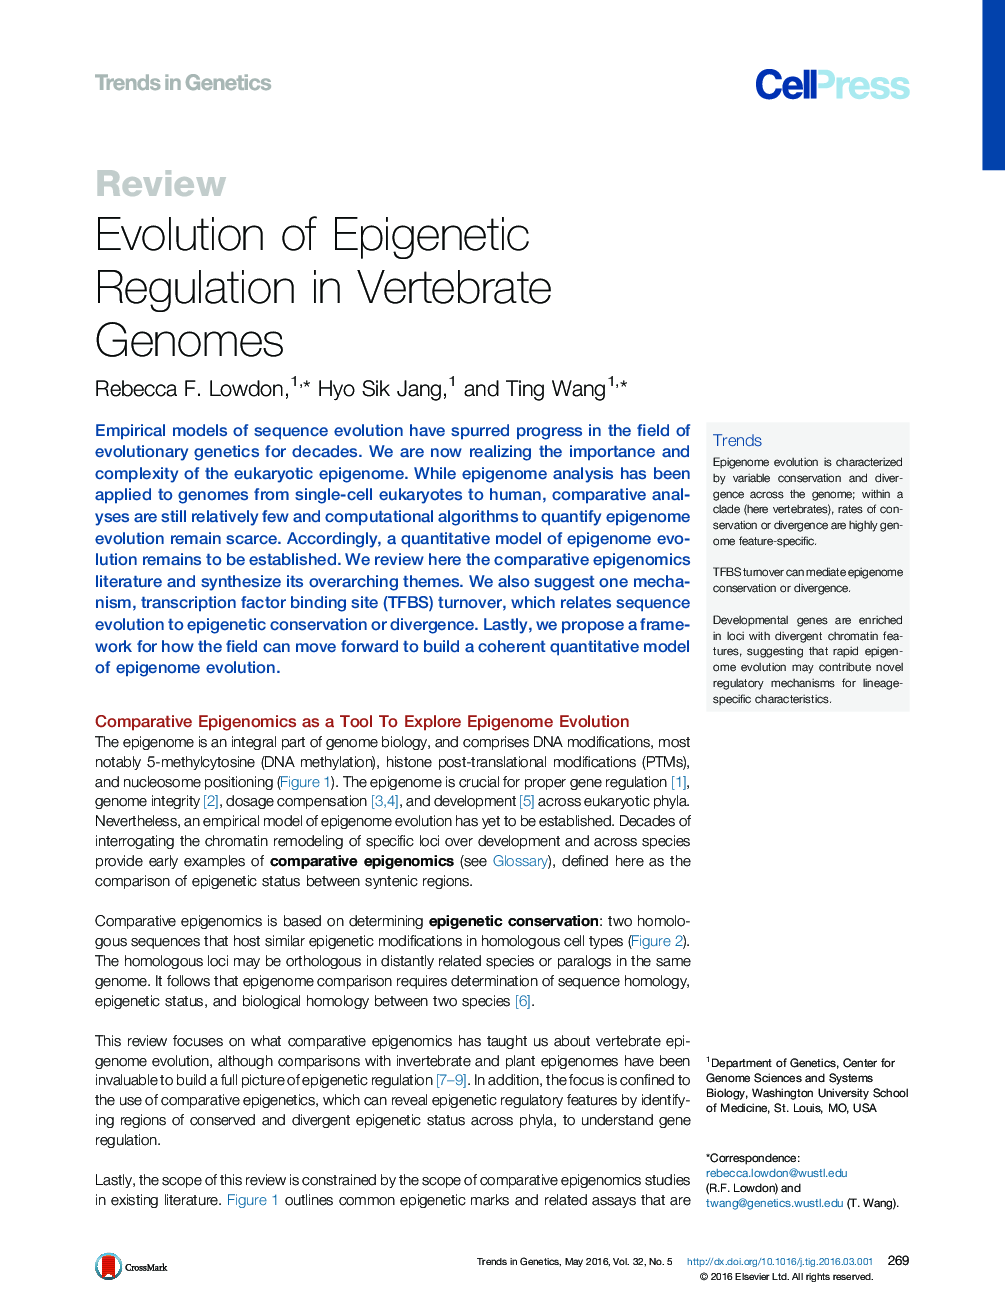 تکامل مقررات اپیگنتیک در ژنوم مهره دار 